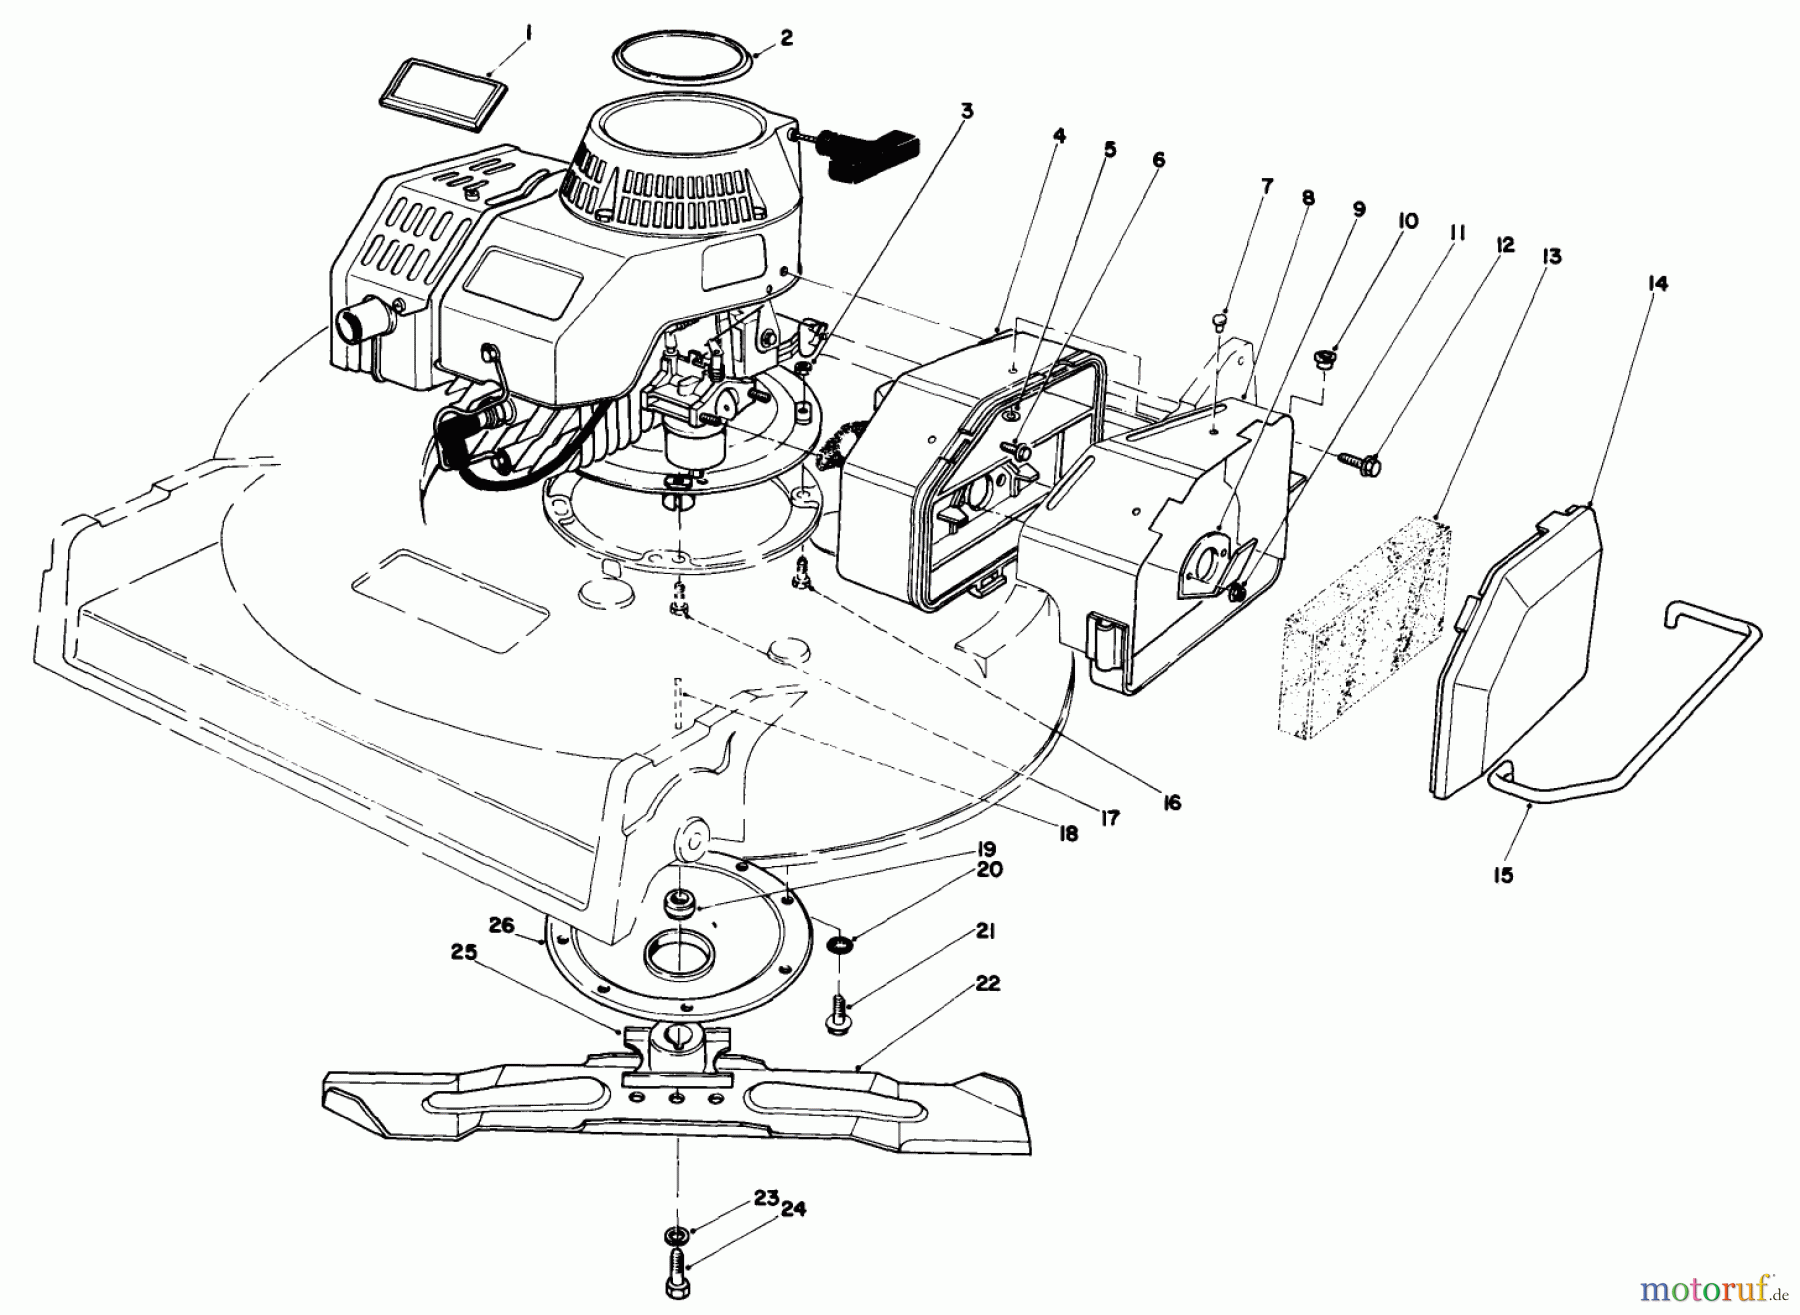  Toro Neu Mowers, Walk-Behind Seite 2 22035 - Toro Lawnmower, 1988 (8002990-8999999) ENGINE ASSEMBLY (MODEL 22030)